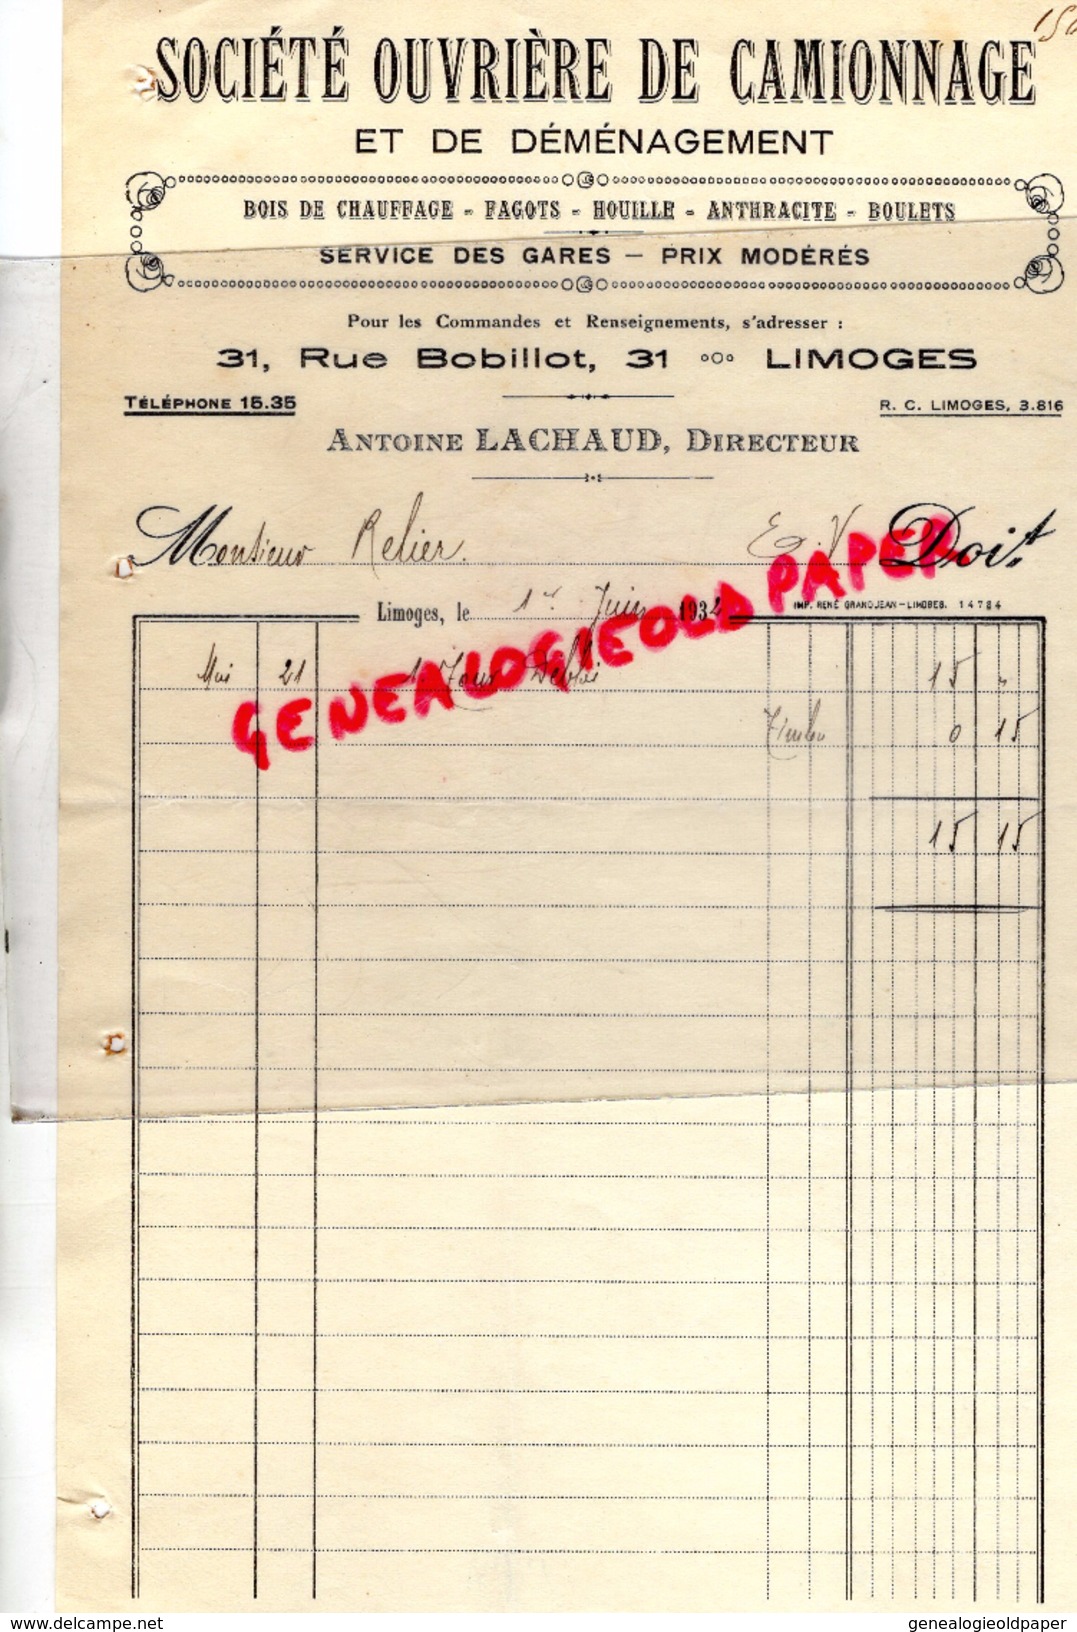 87 - LIMOGES - FACTURE SOCIETE OUVRIERE CAMIONNAGE DEMENAGEMENT- 31 RUE BOBILLOT- ANTOINE LACHAUD- 1932 - Transportmiddelen